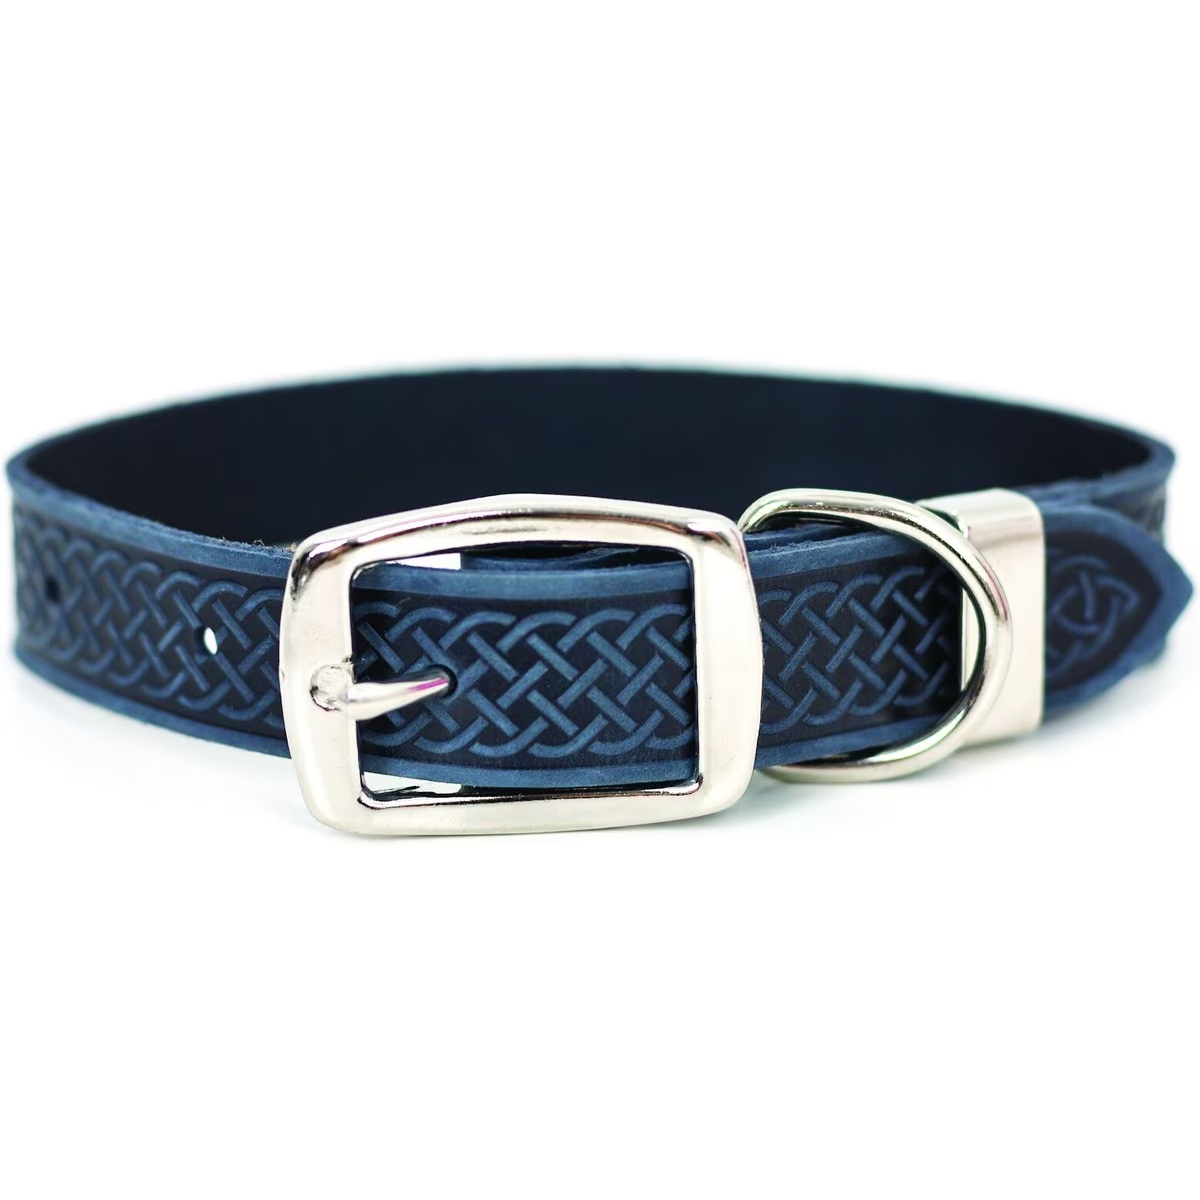 Euro-Dog Celtic Style Leather Dog Collar